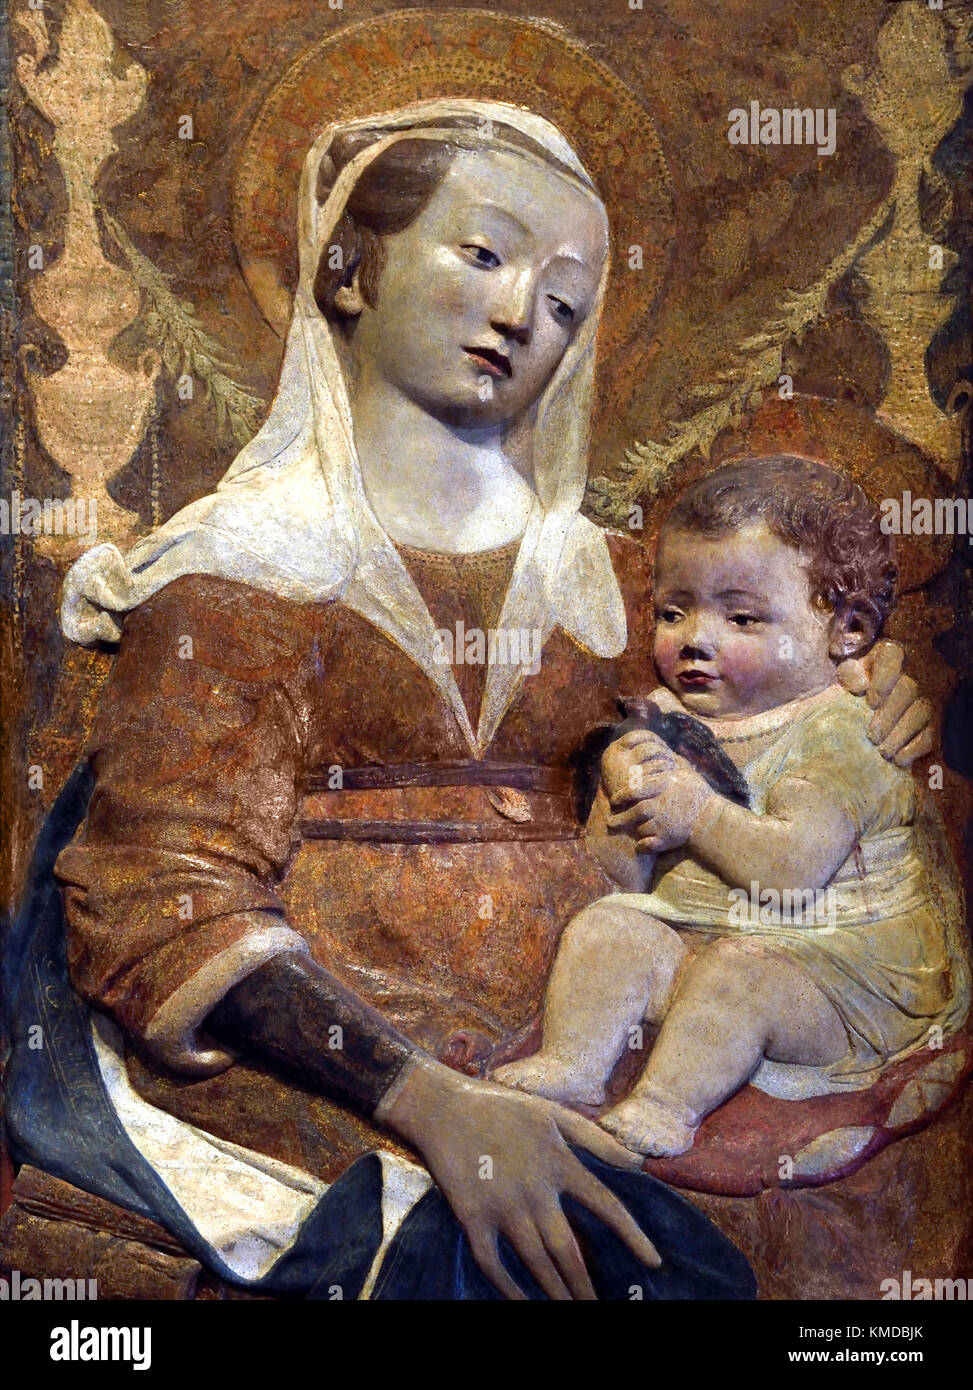 Madonna con Bambino (Dei candelabri) Madonna mit Kind (von dem Leuchter) 1465 Antonio Rossellino 15. Jahrhundert Nationalmuseum Bargello, das Bargello, Palazzo del Bargello, Florenz, Italien. Stockfoto